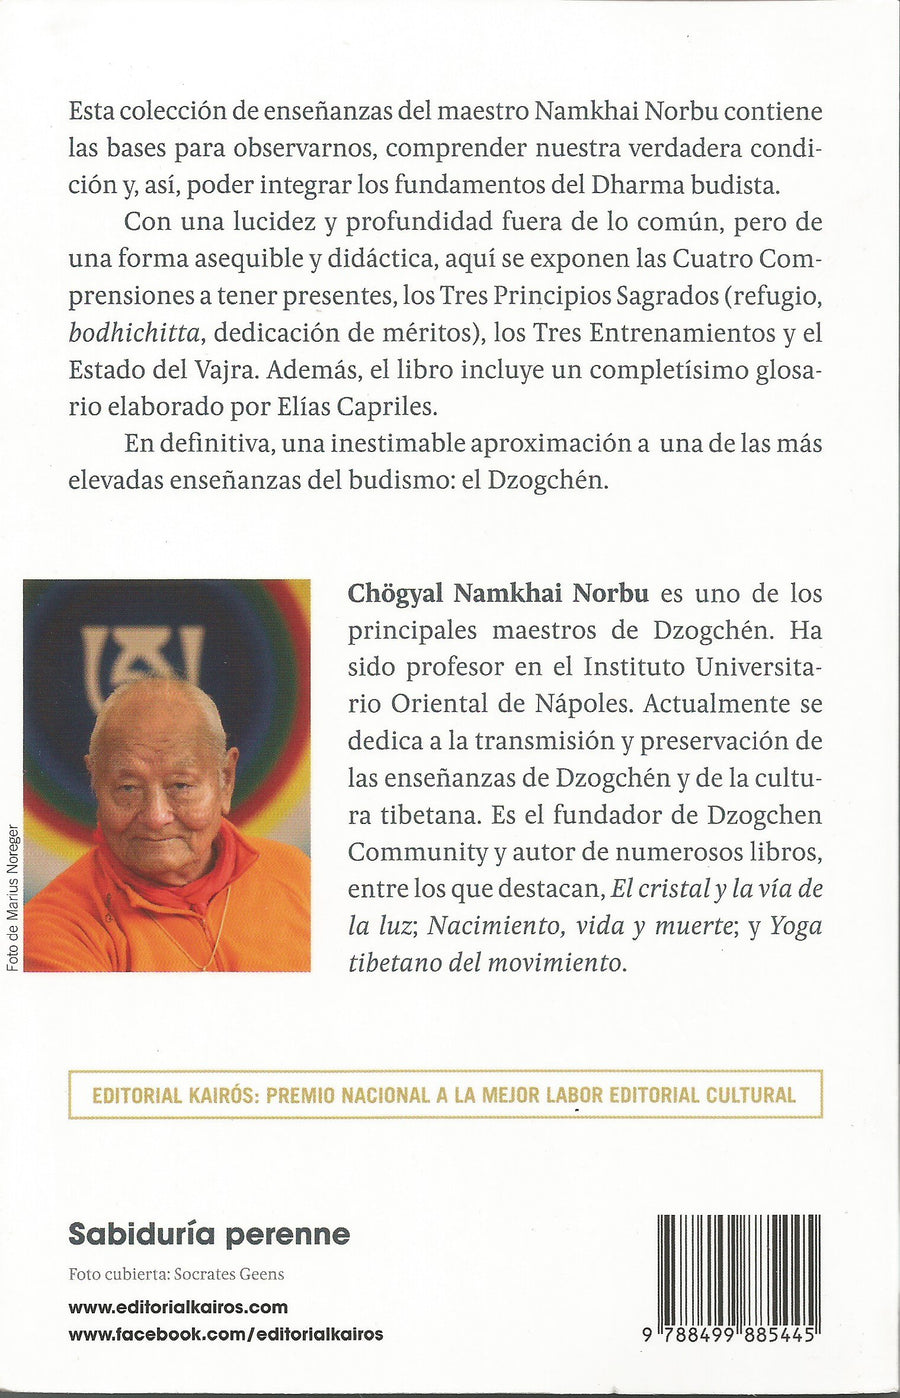 El Fundamento Del Dharma.  Una Aproximación al Dzogchén